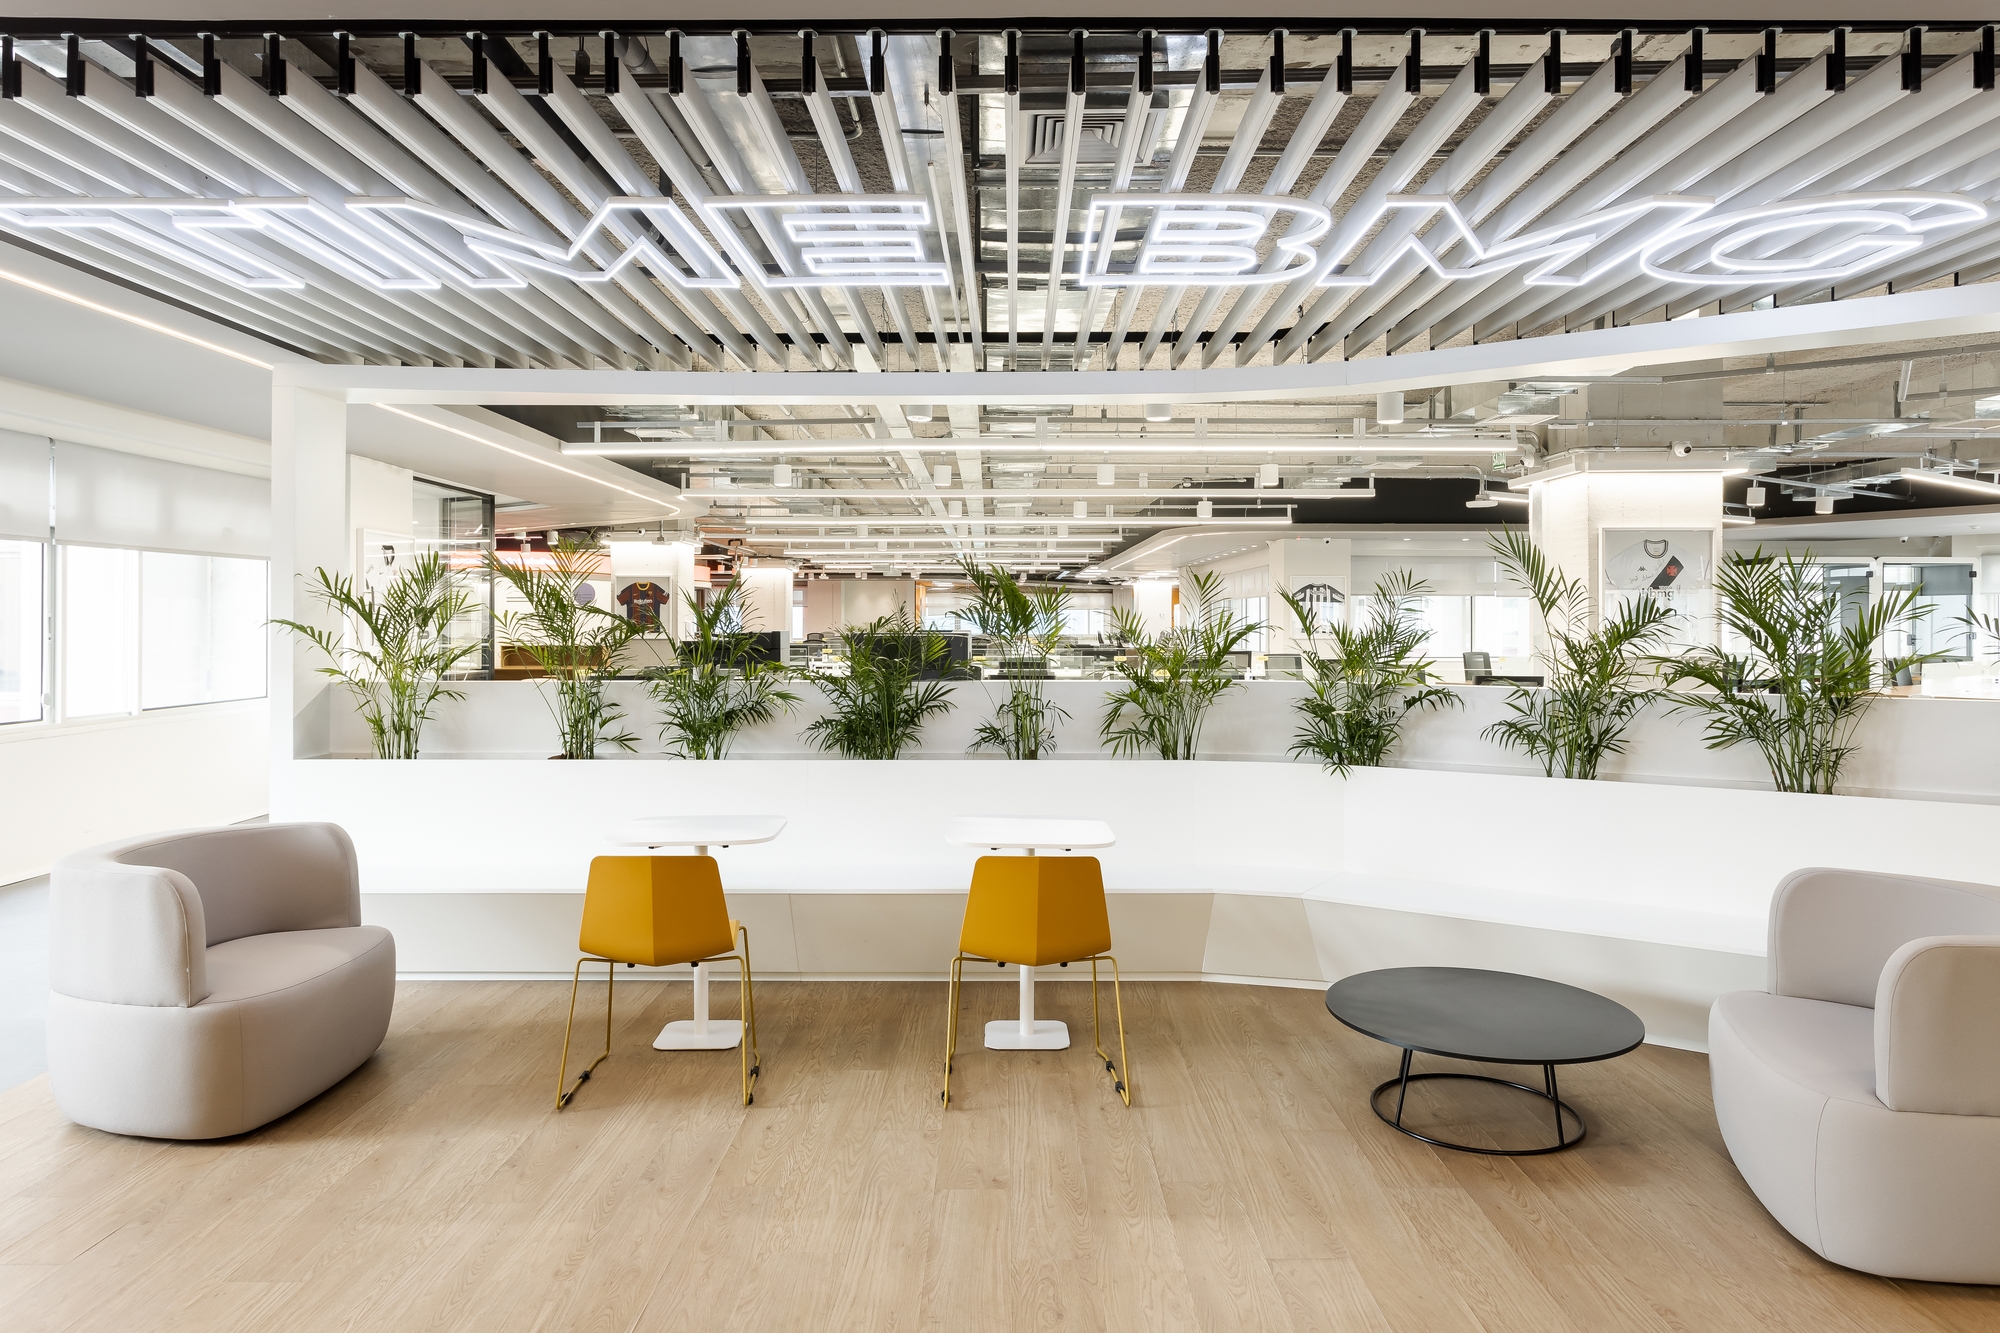 图片[12]|BMG银行办公室——圣保罗|ART-Arrakis | 建筑室内设计的创新与灵感